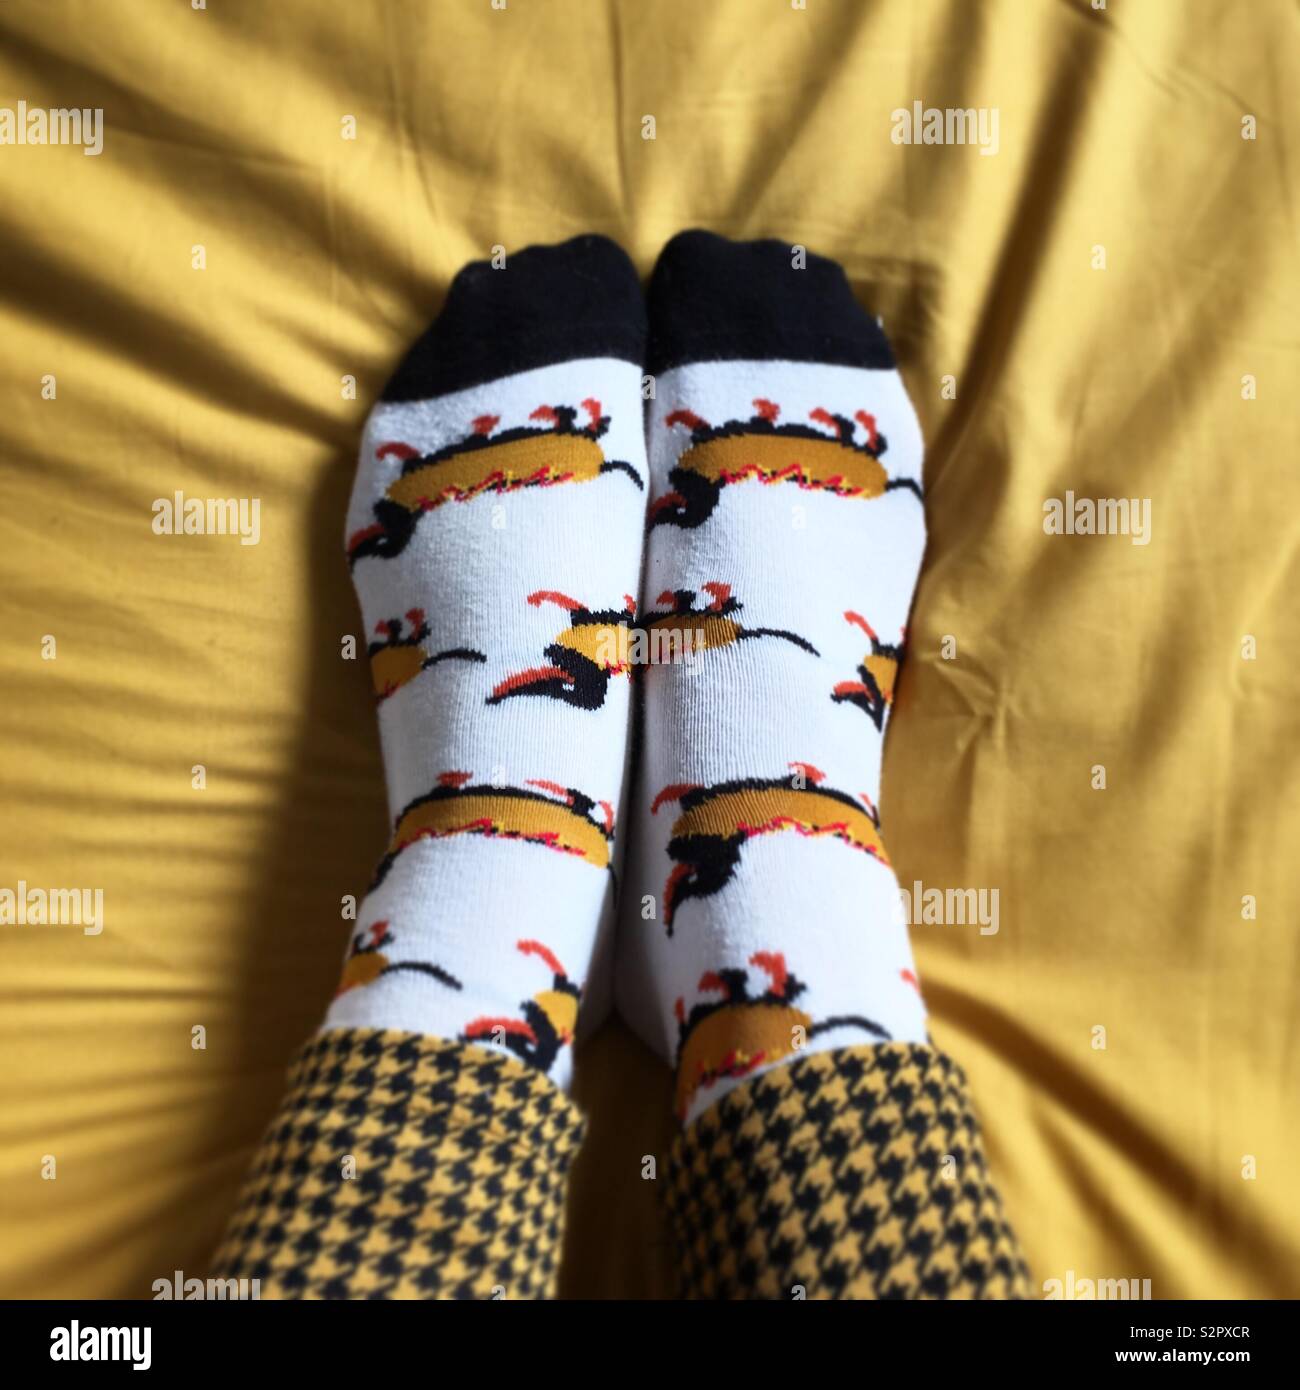 Füße im heißen Hund dackel Socken auf Senf Betten Stockfotografie - Alamy